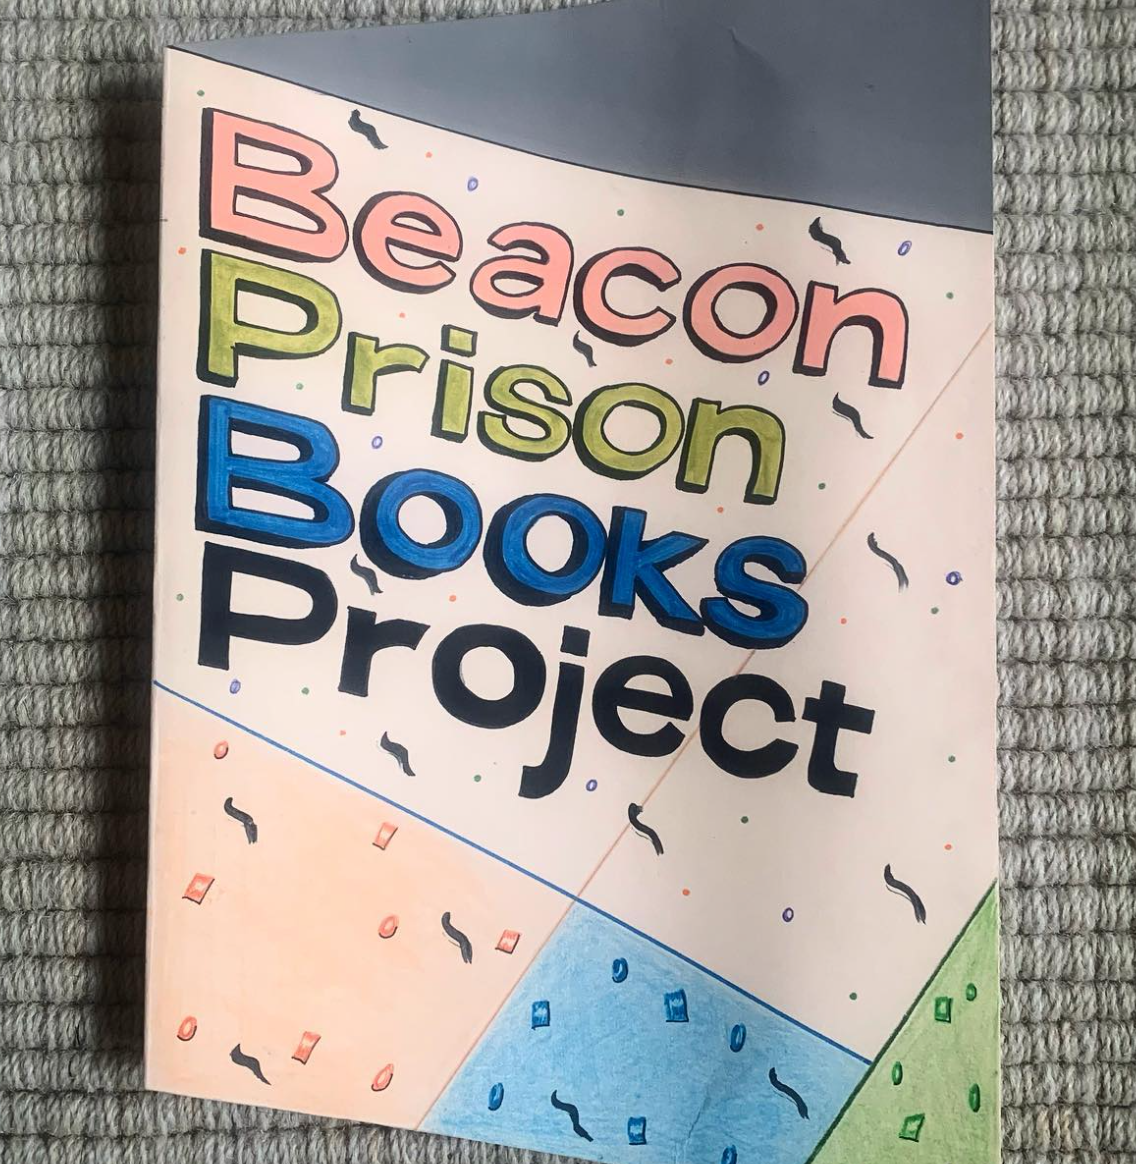 Beacon Prison Books Project screen shot.